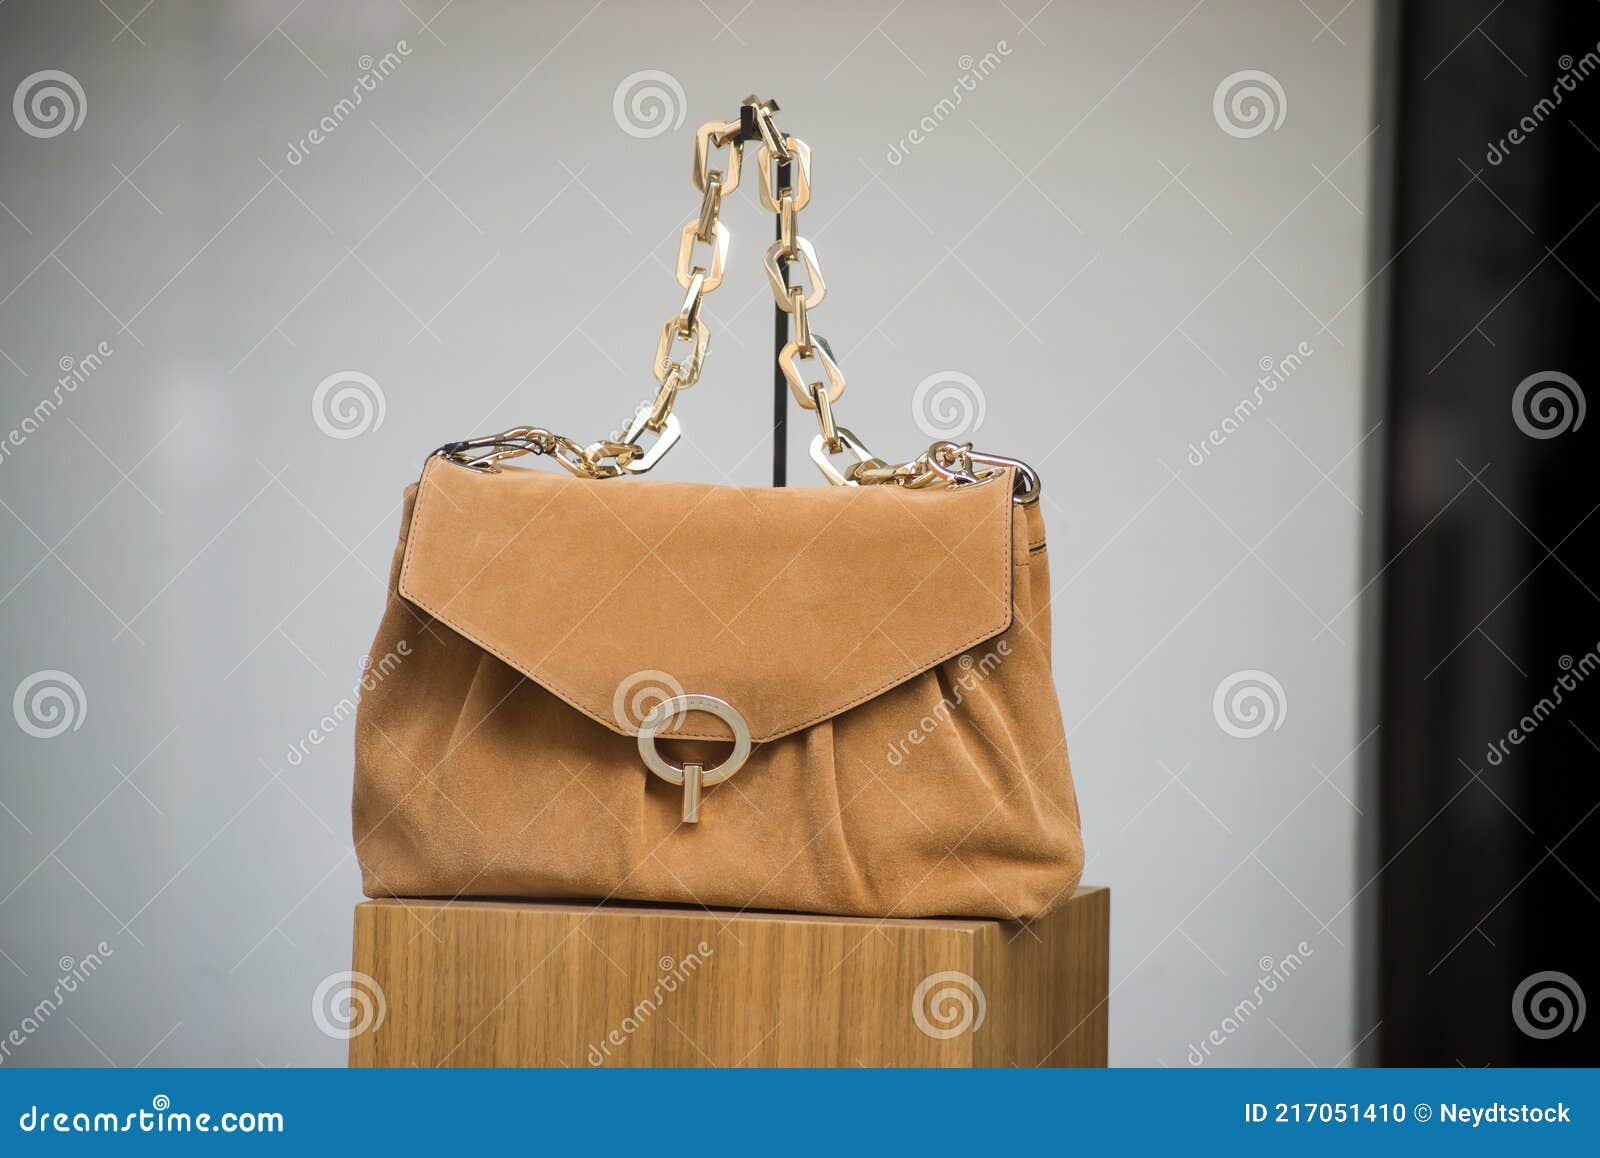 Bruine Handtas in Een Modesleutel Stock Foto - Image of toevallig ...